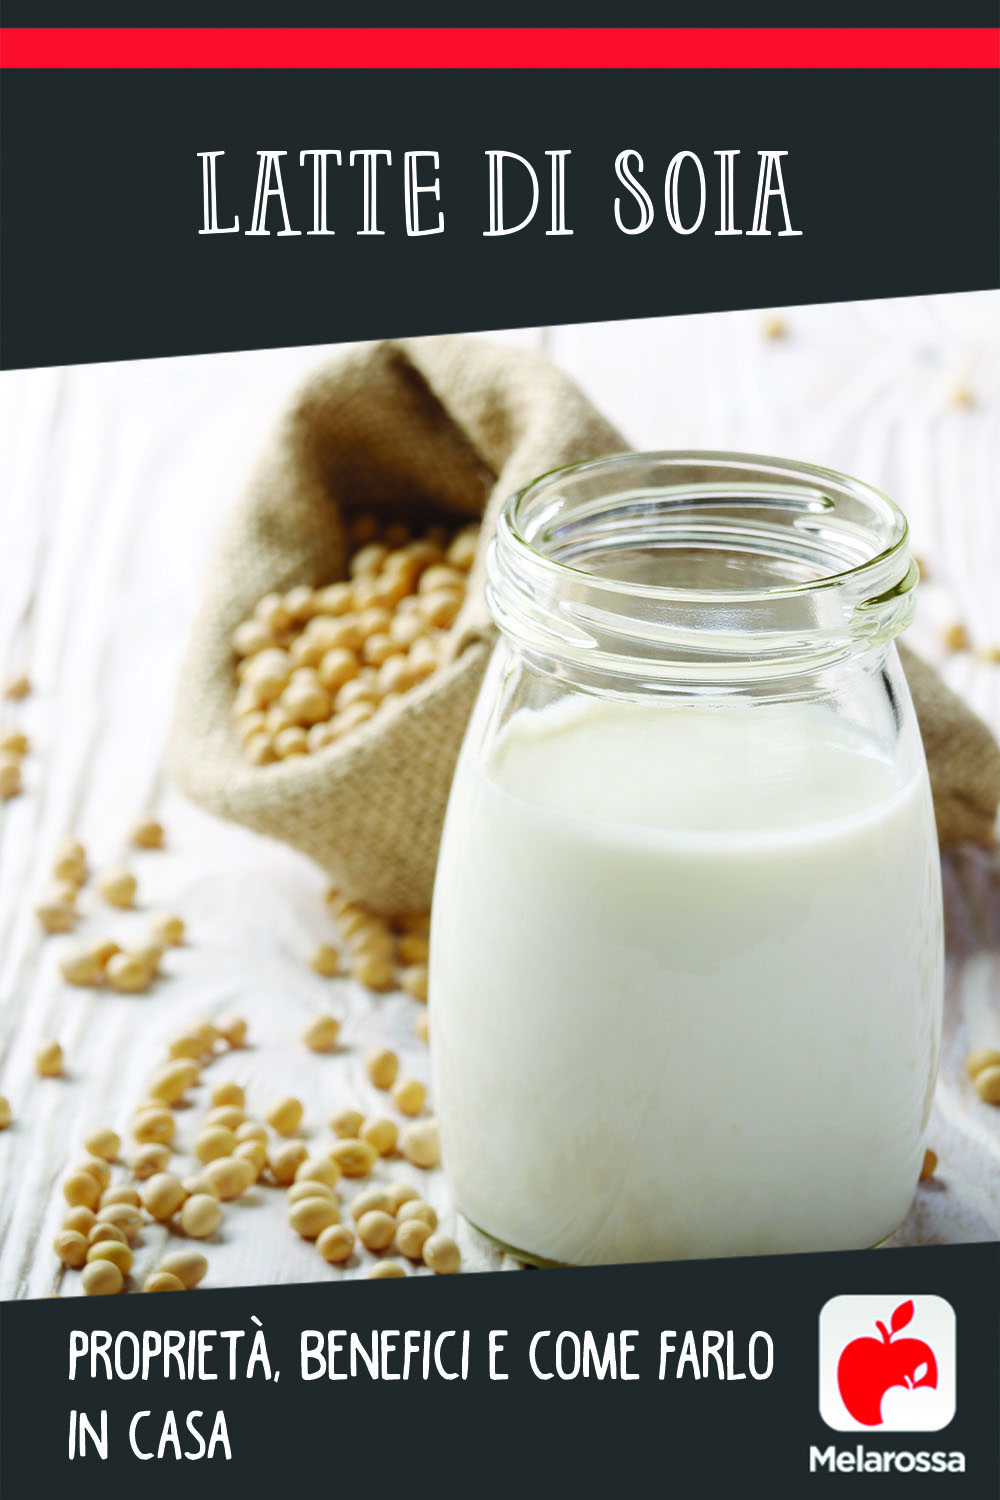 Latte di soia: benefici e come farlo in casa